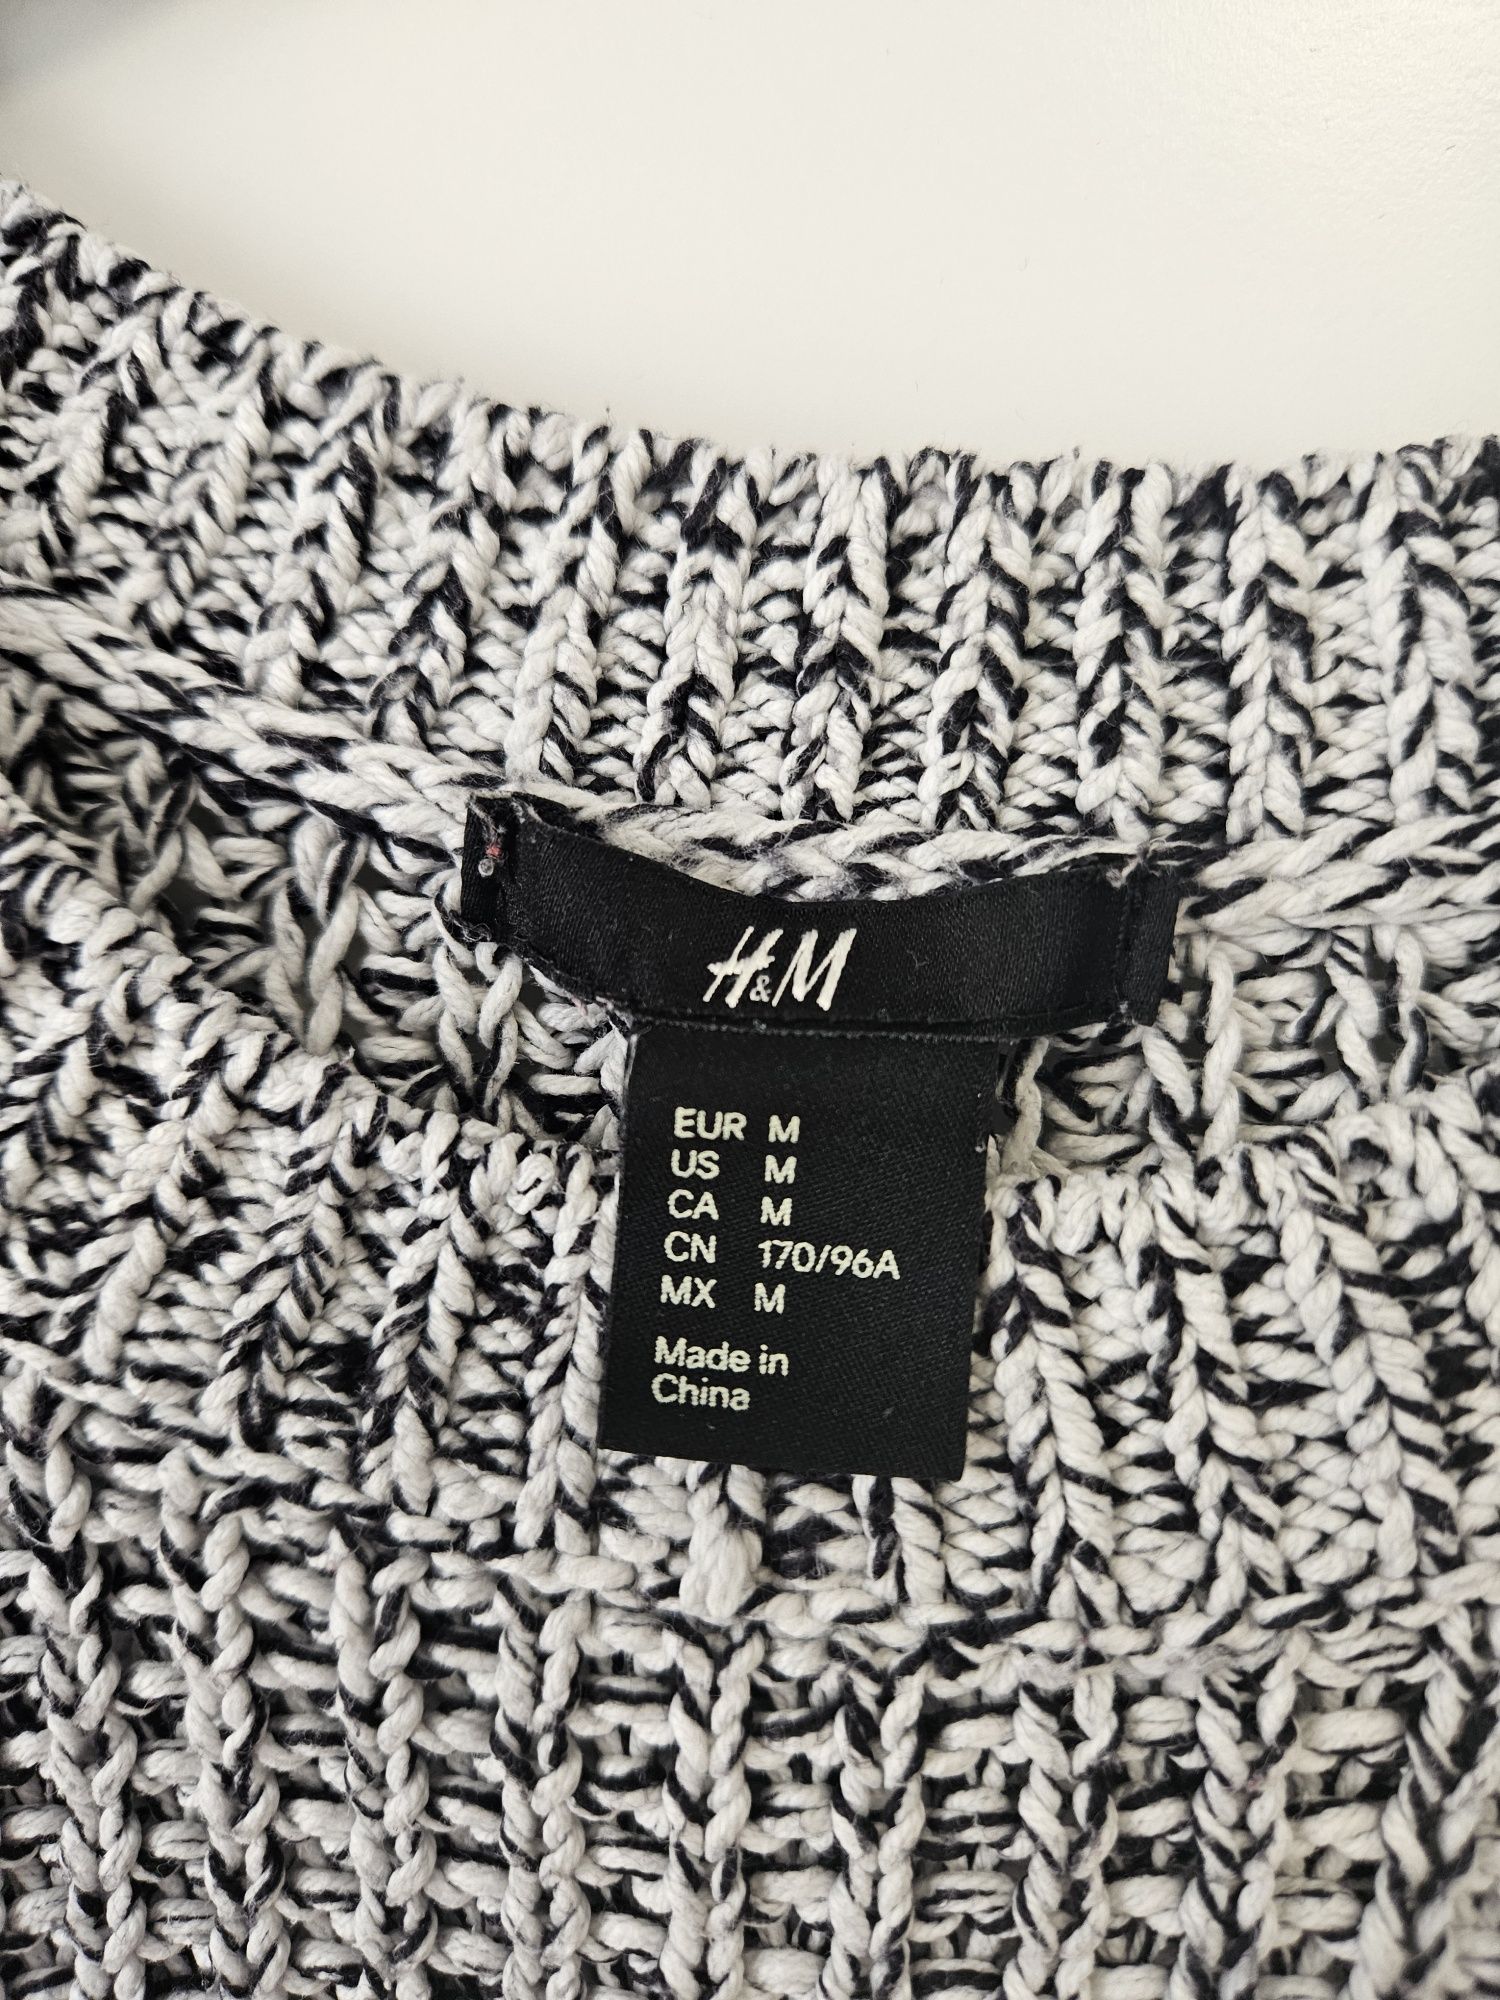 Pulover tricotat 
H&M
Marimea M
Stare foarte bună 
15 lei